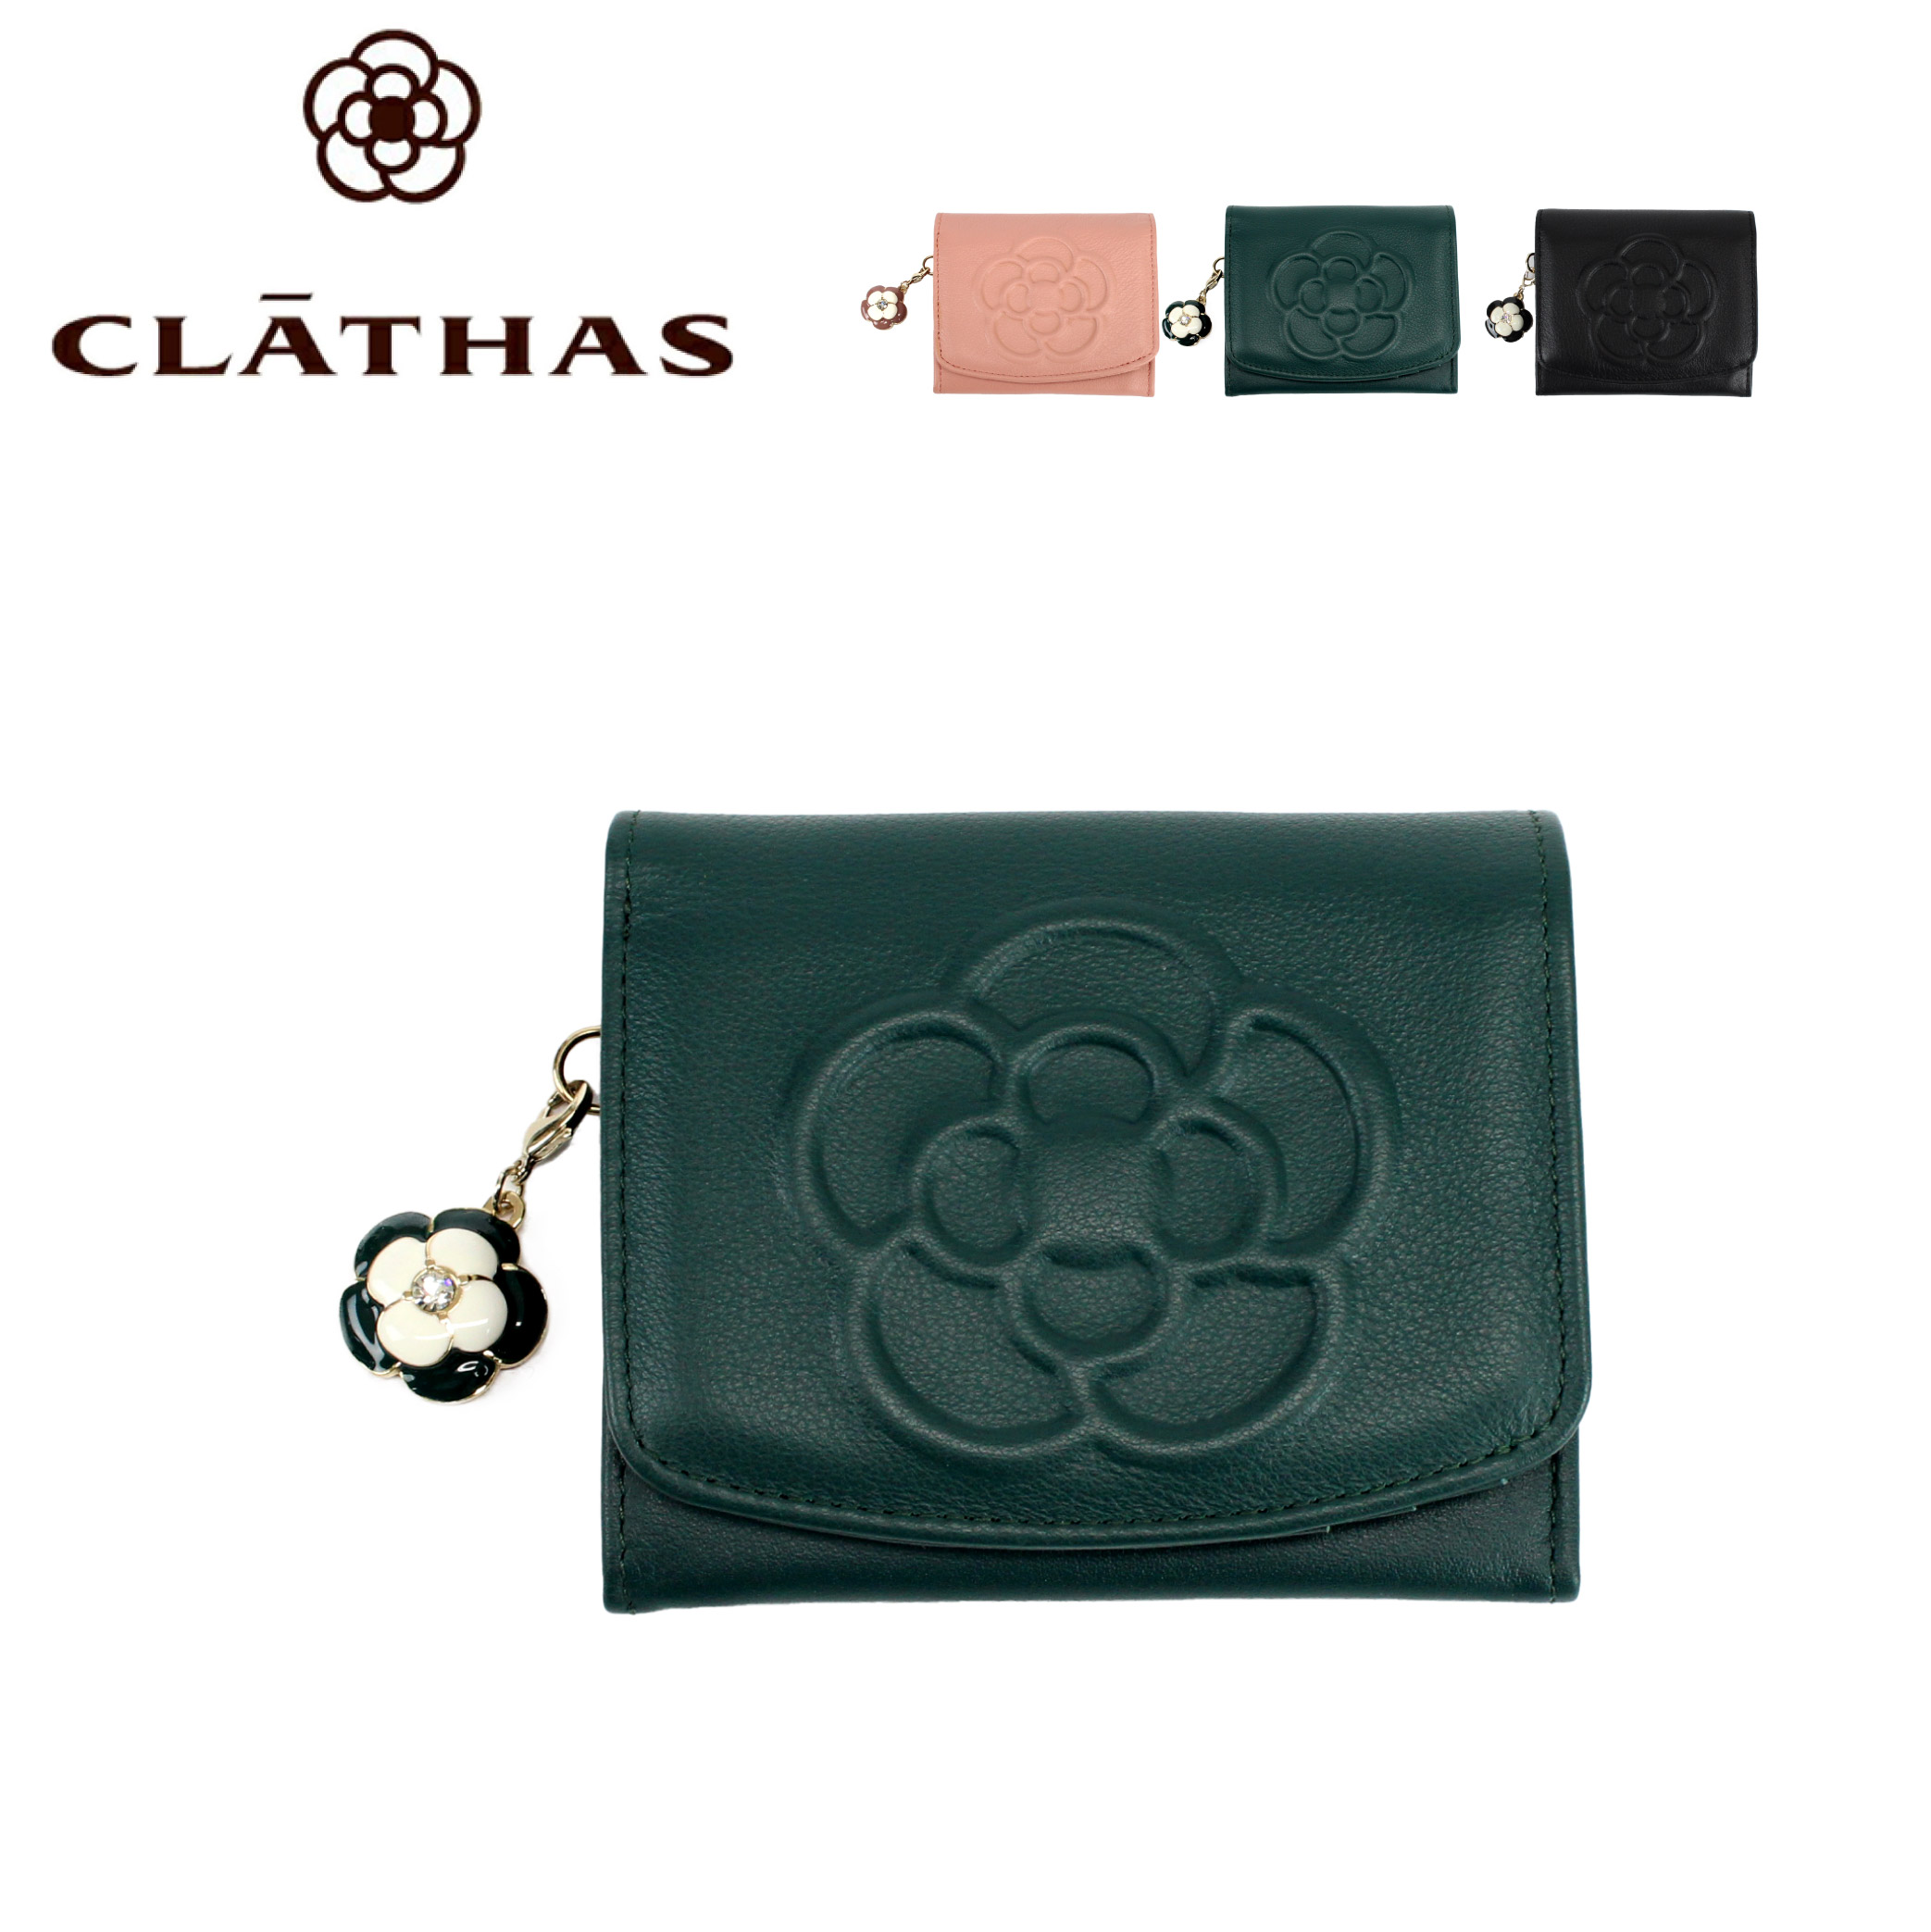 クレイサス 財布 CLATHAS 折り財布 BOX型 ワッフル 185435 レディース財布 二つ折り財布 花柄 本革 牛革 緑 黒 ピンク 一粒万倍  母の日